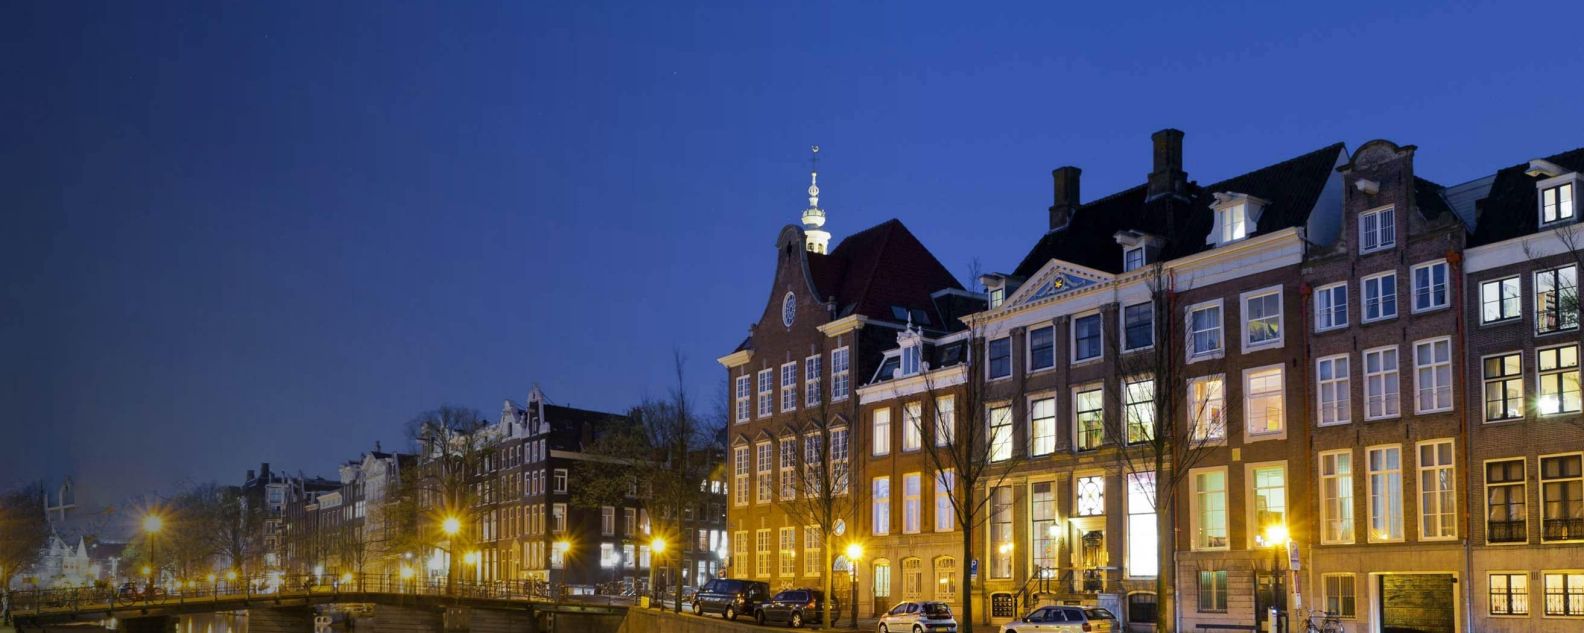 Photo de bâtiments traditionnels à Amsterdam, Pays-Bas